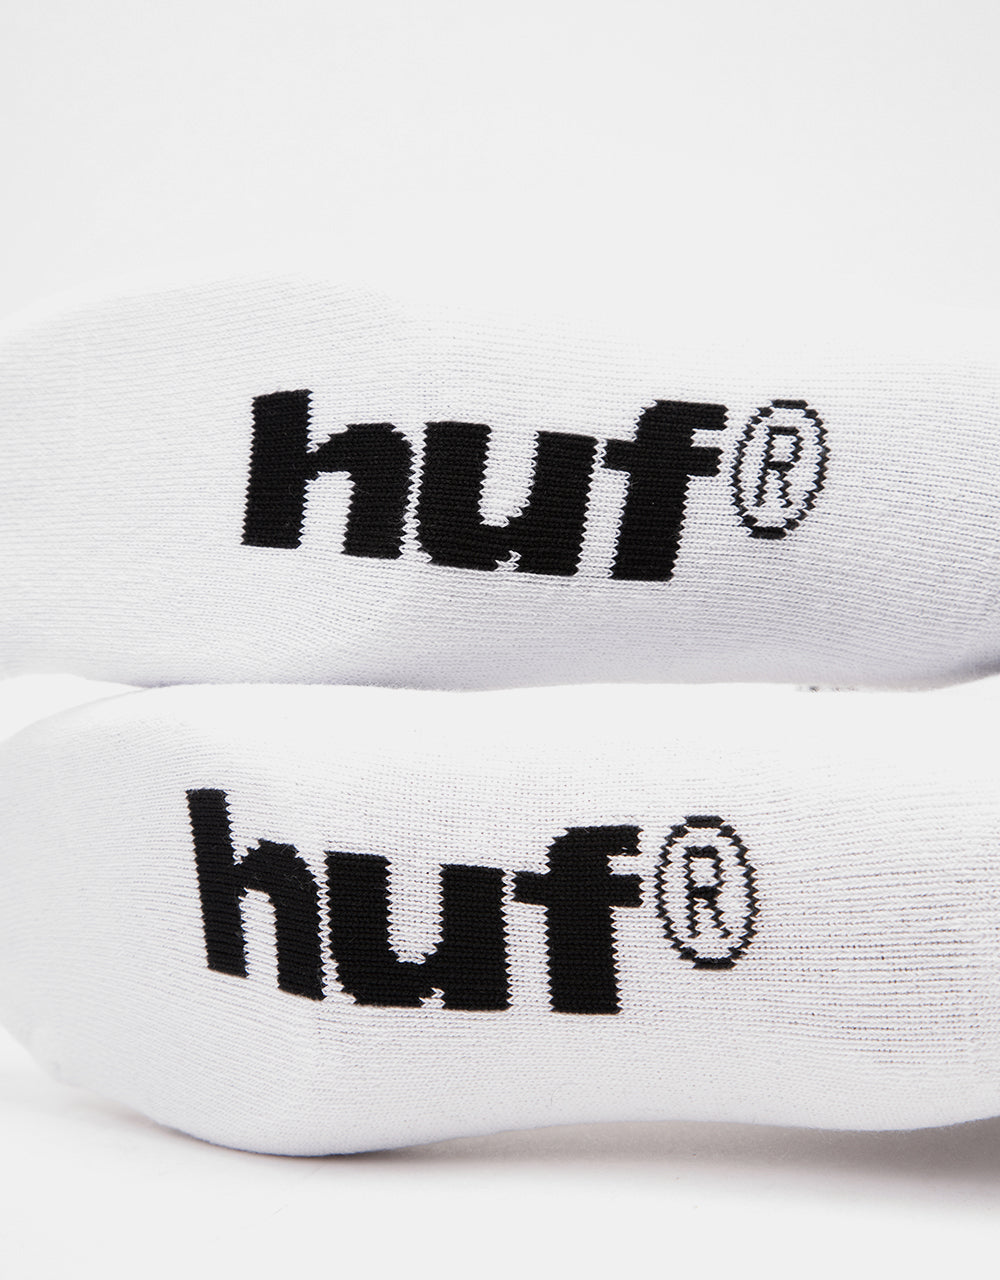 HUF Rave Crew Socks - White